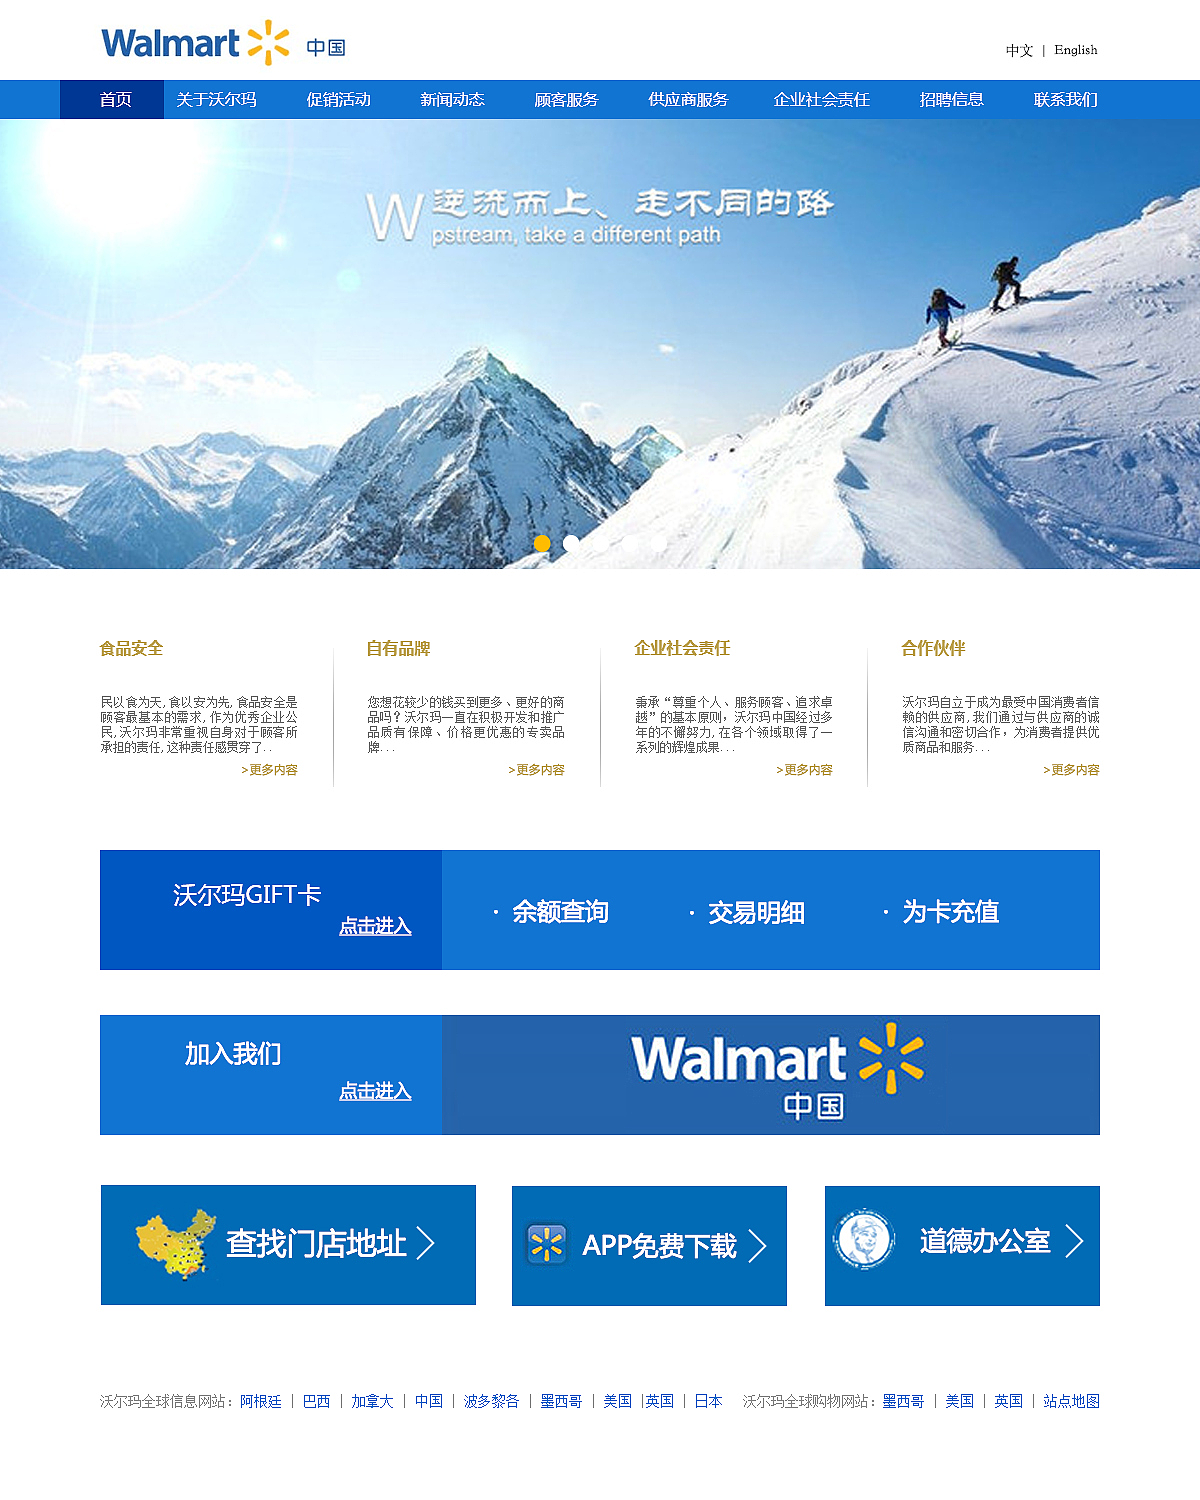 改版沃尔玛中国区域官网图片